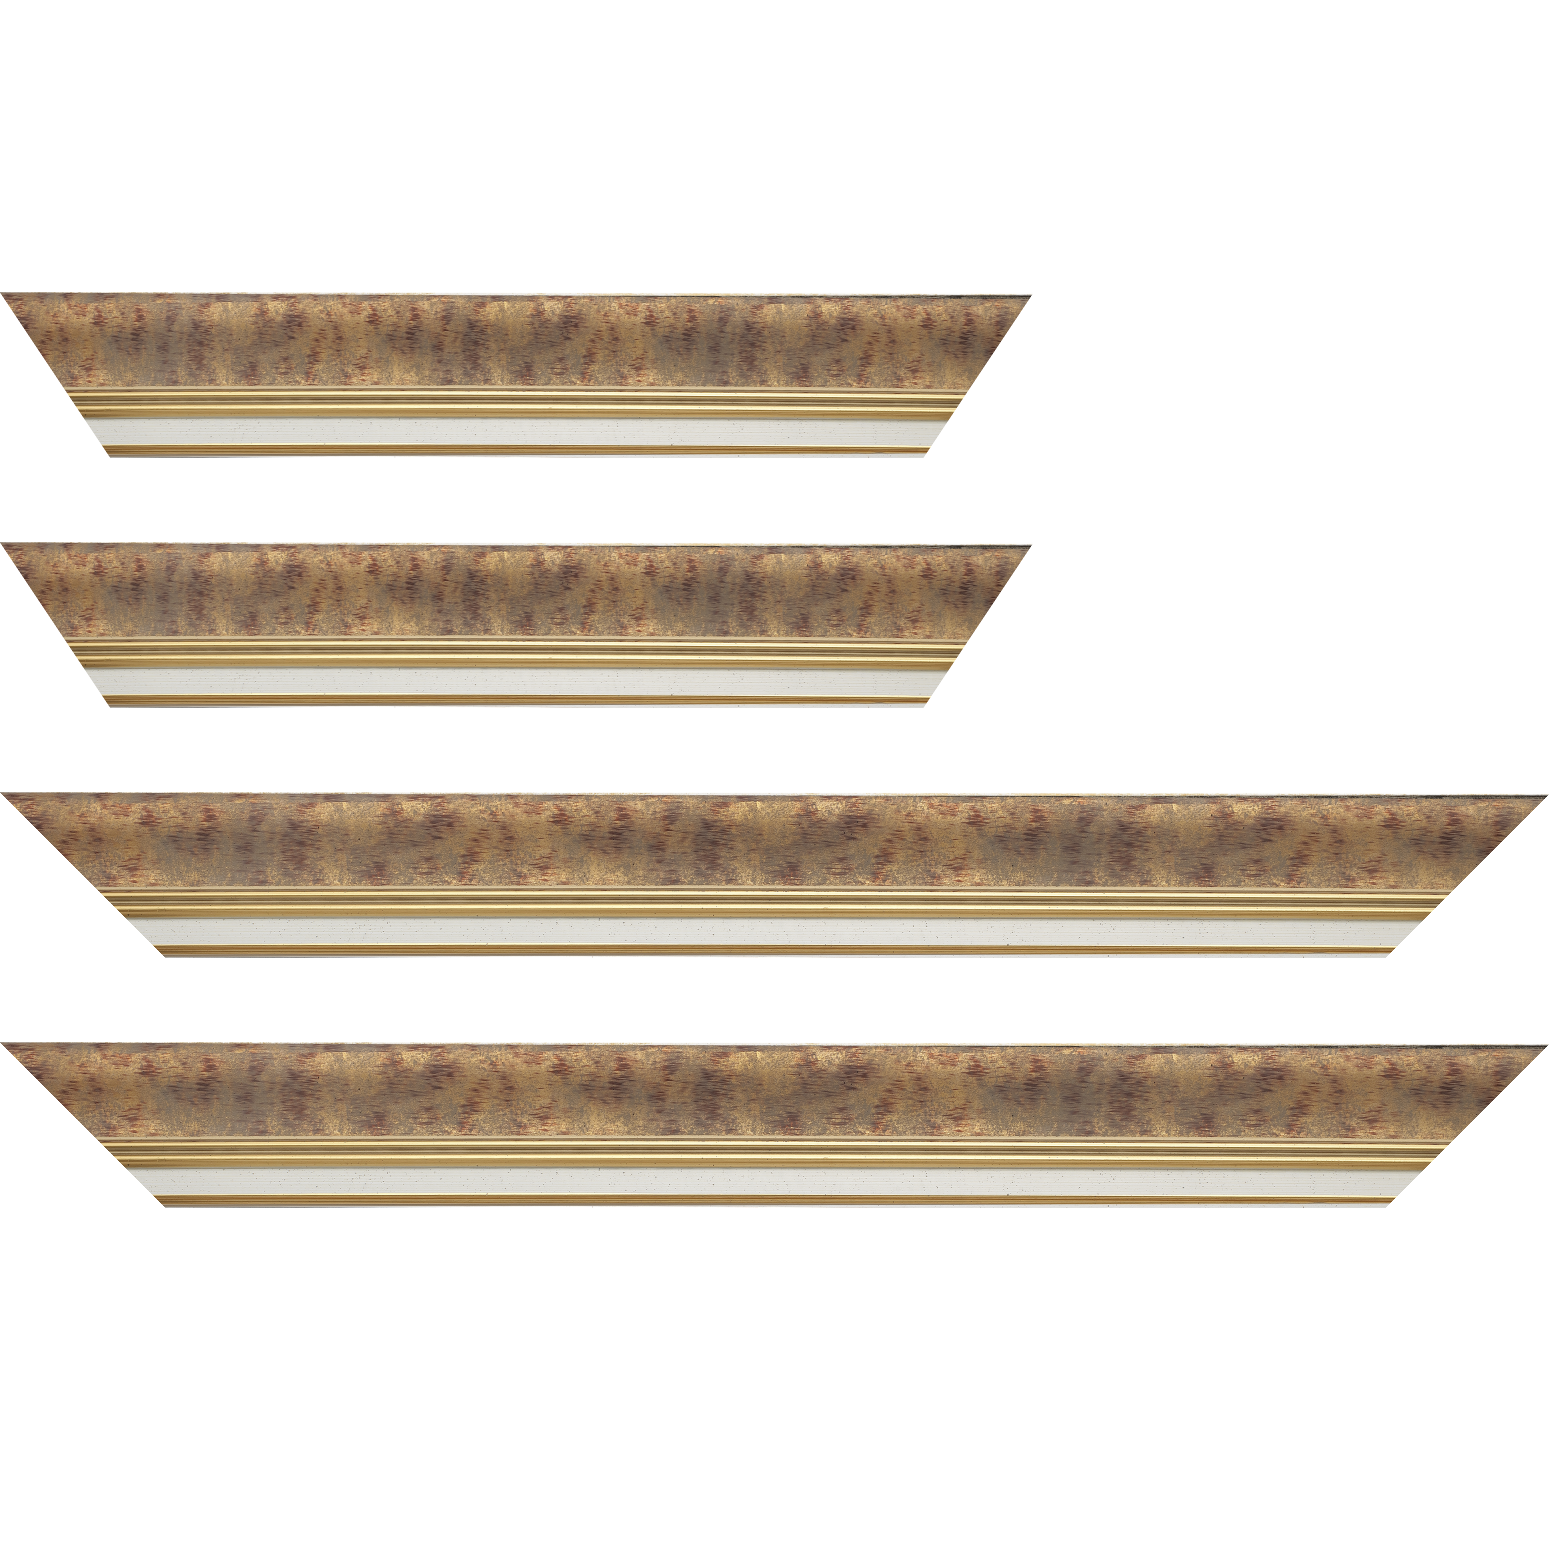 Baguette bois profil incurvé largeur 5.7cm de couleur bordeaux patiné fond or marie louise blanche mouchetée filet or intégré